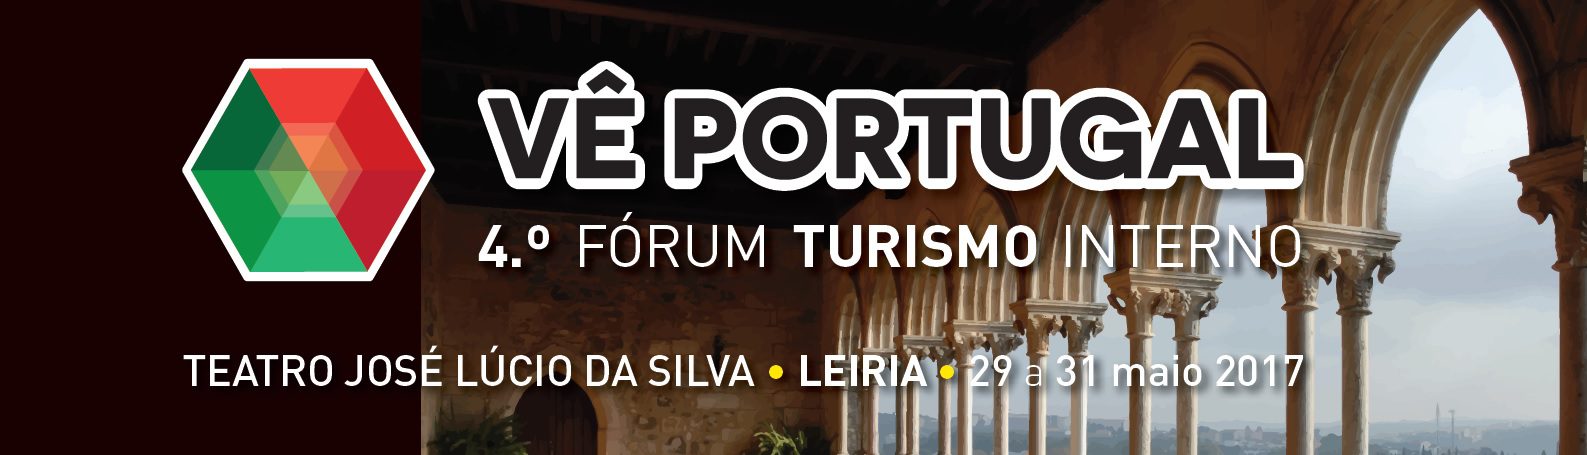 FÓRUM “VÊ PORTUGAL”: O debate sobre o turismo em Portugal para portugueses